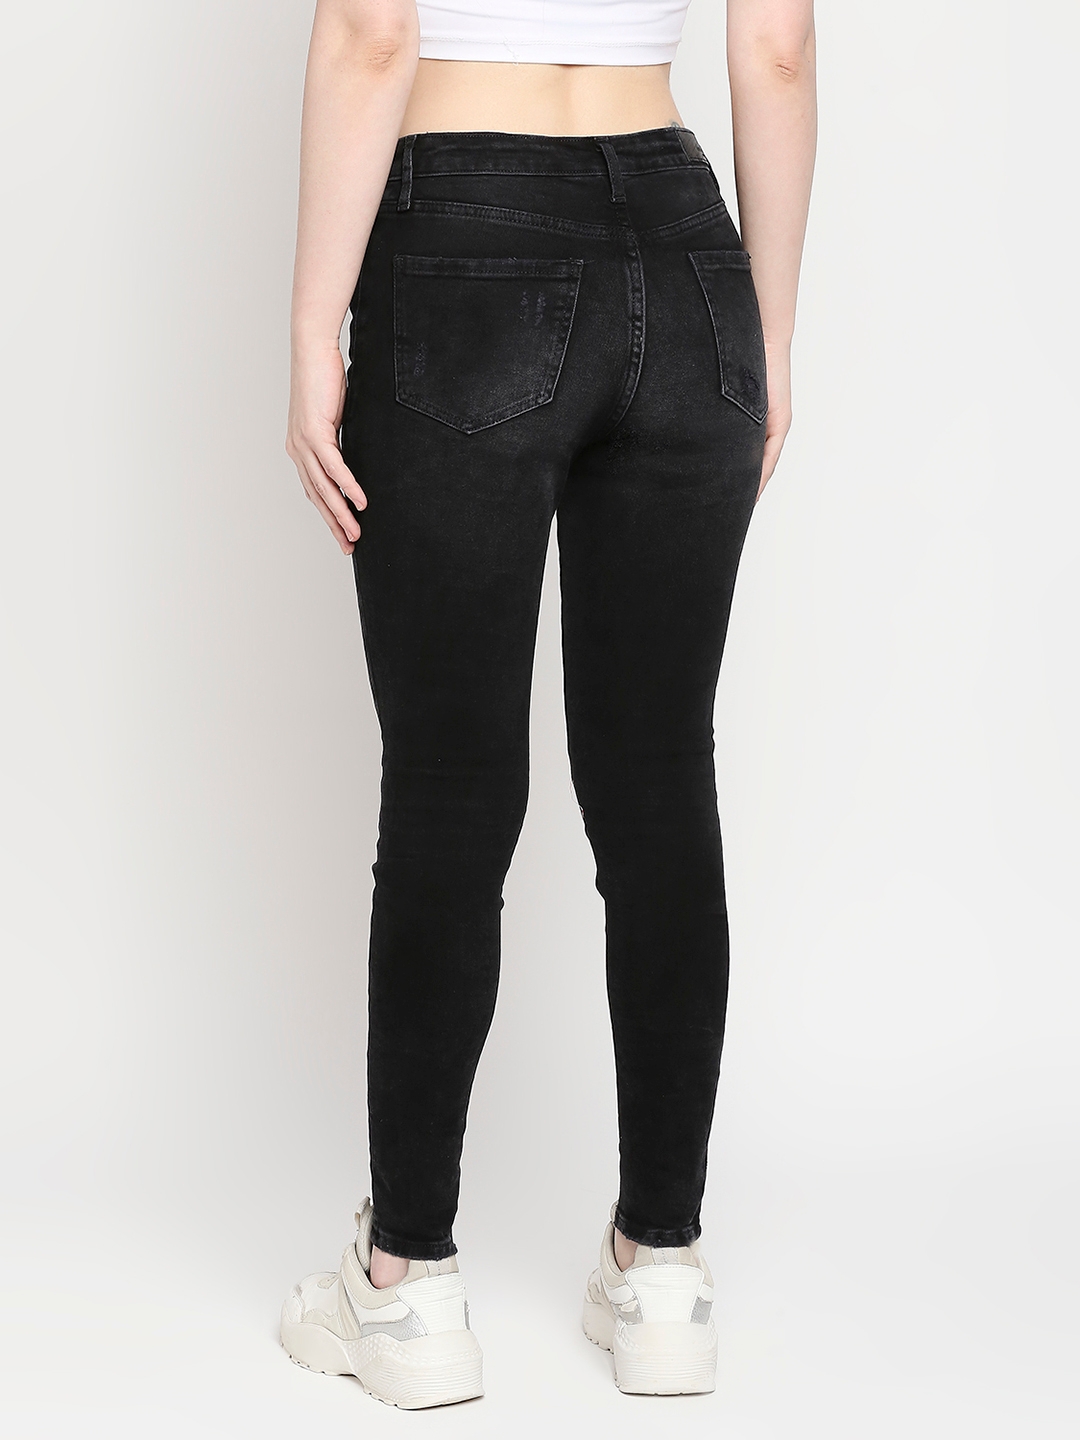 spykar | Women's Black Lycra Solid Jeans 3